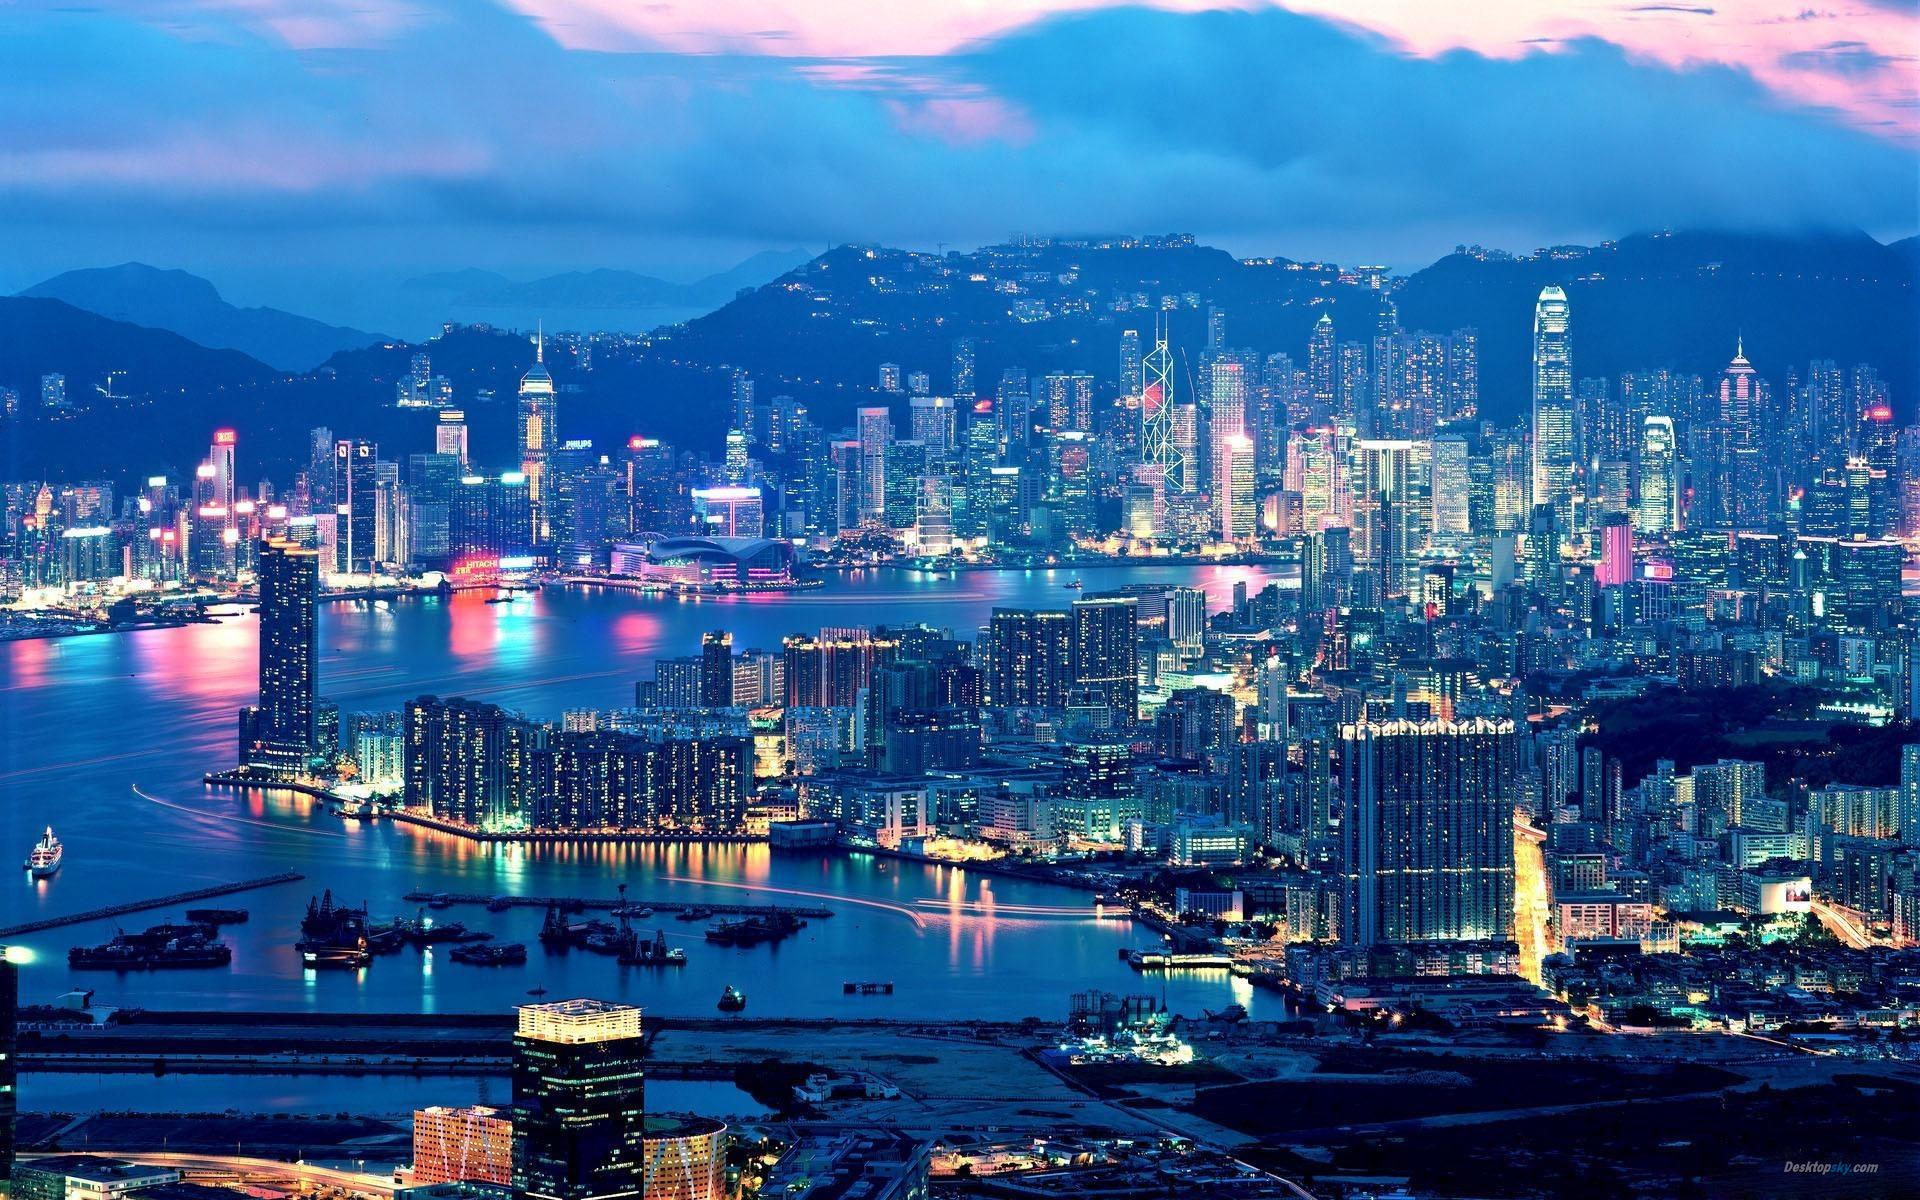 中国香港图片大全_中国香港风景图片/景点照片/旅游摄影【驴妈妈攻略】